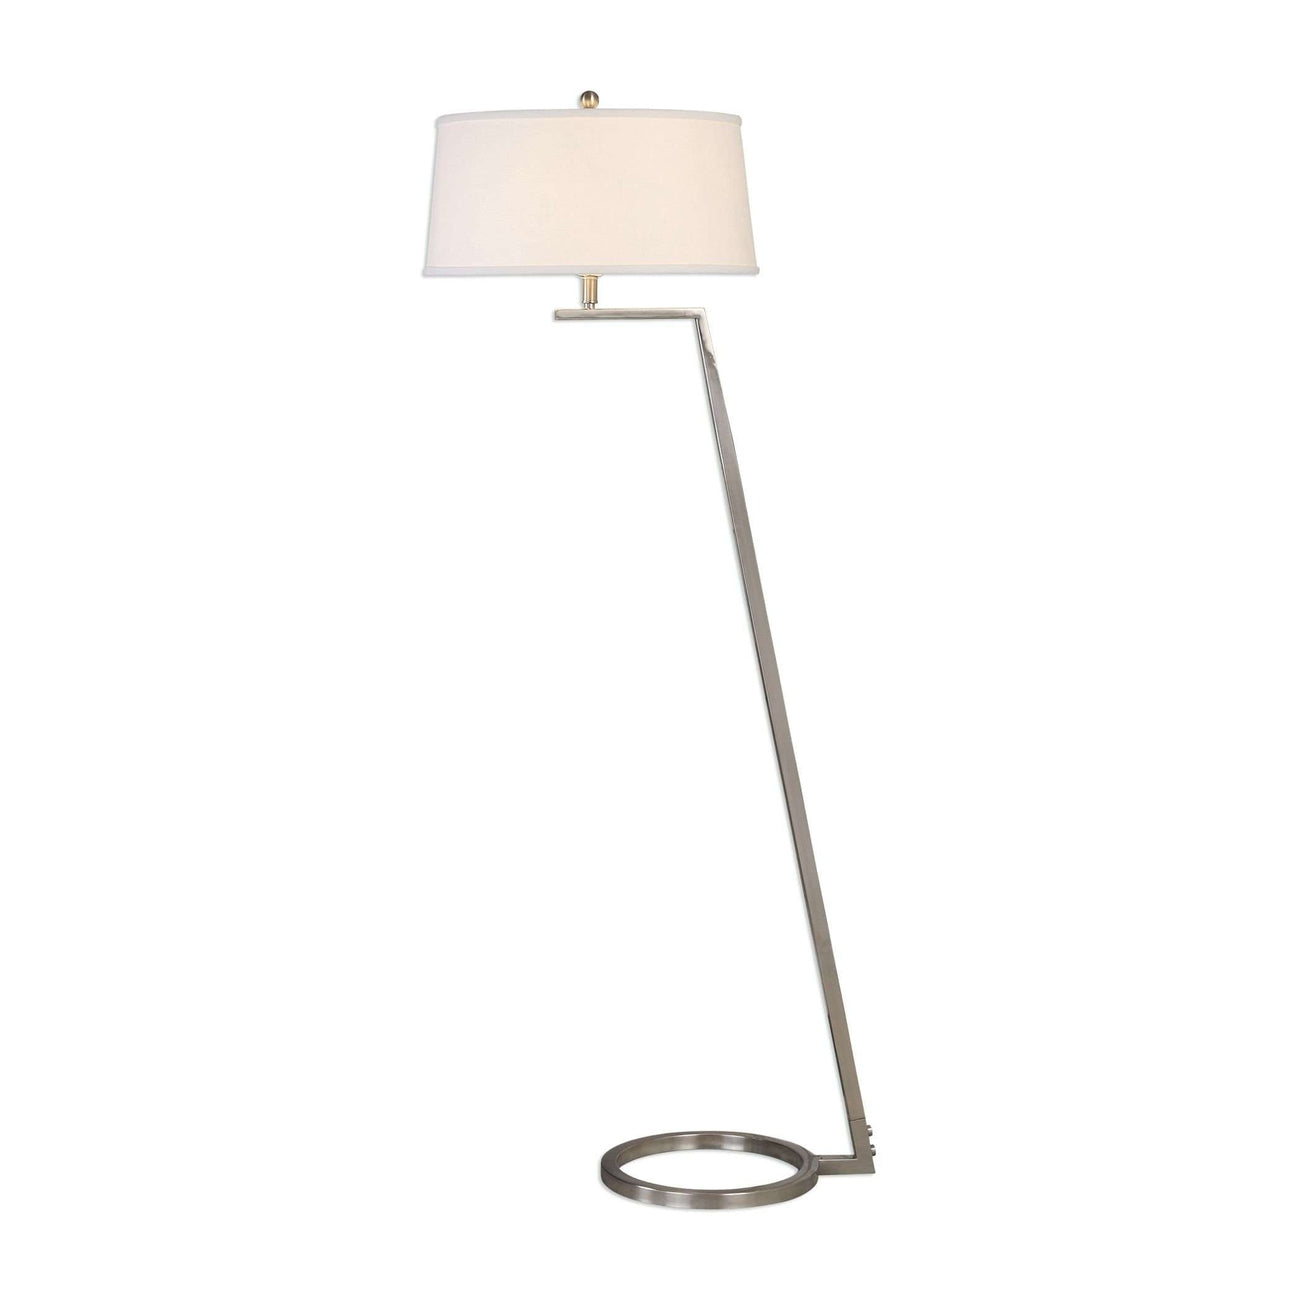 Ordino Modern Nickel Floor Lamp-Uttermost-UTTM-28108-Floor Lamps-1-France and Son